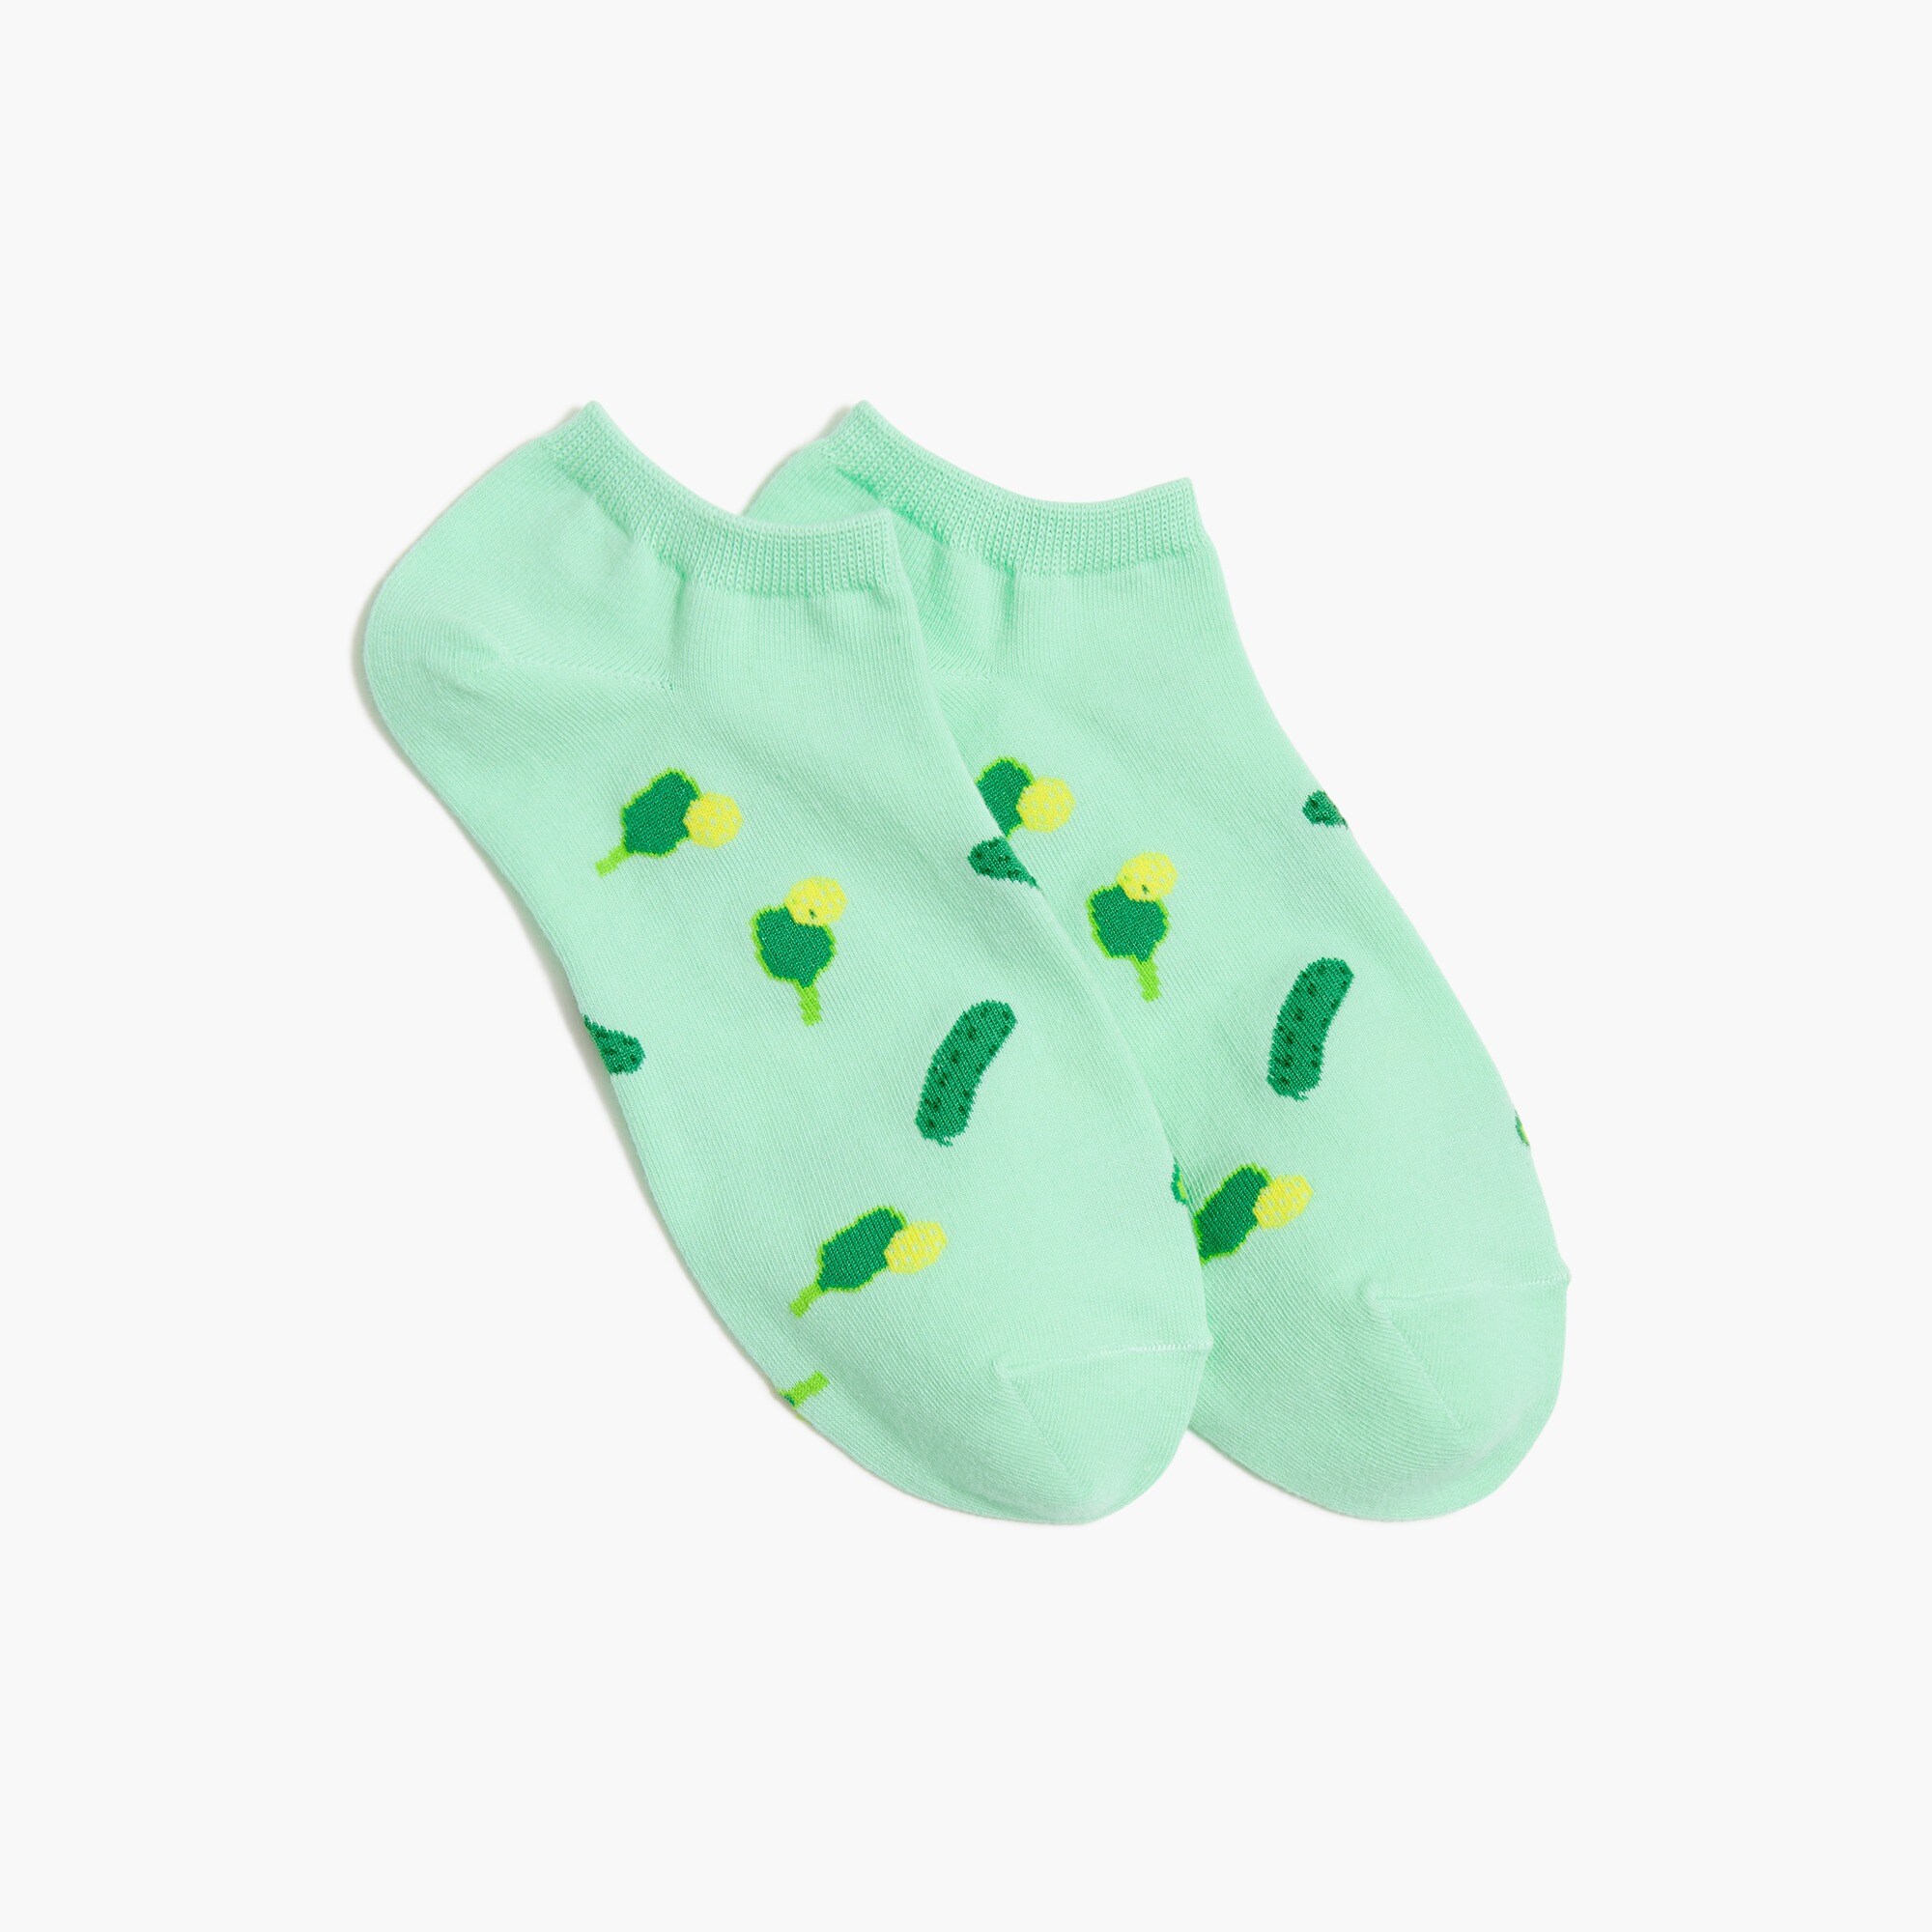  Pickleball ankle socks